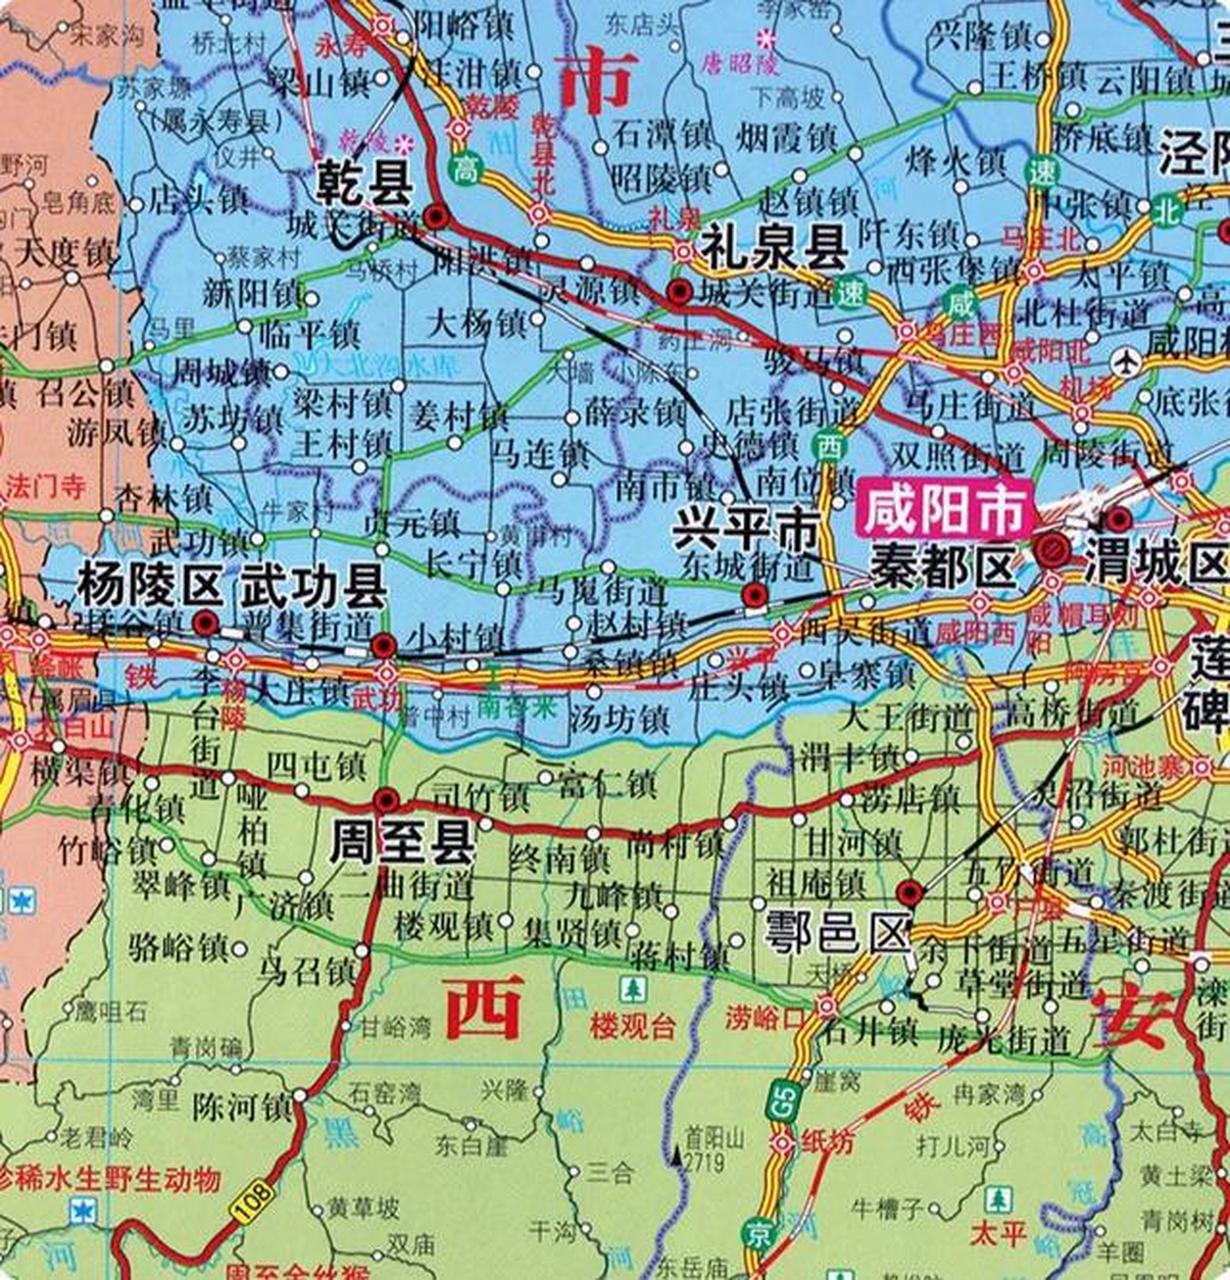 周至县在渭河以南,属于西安.